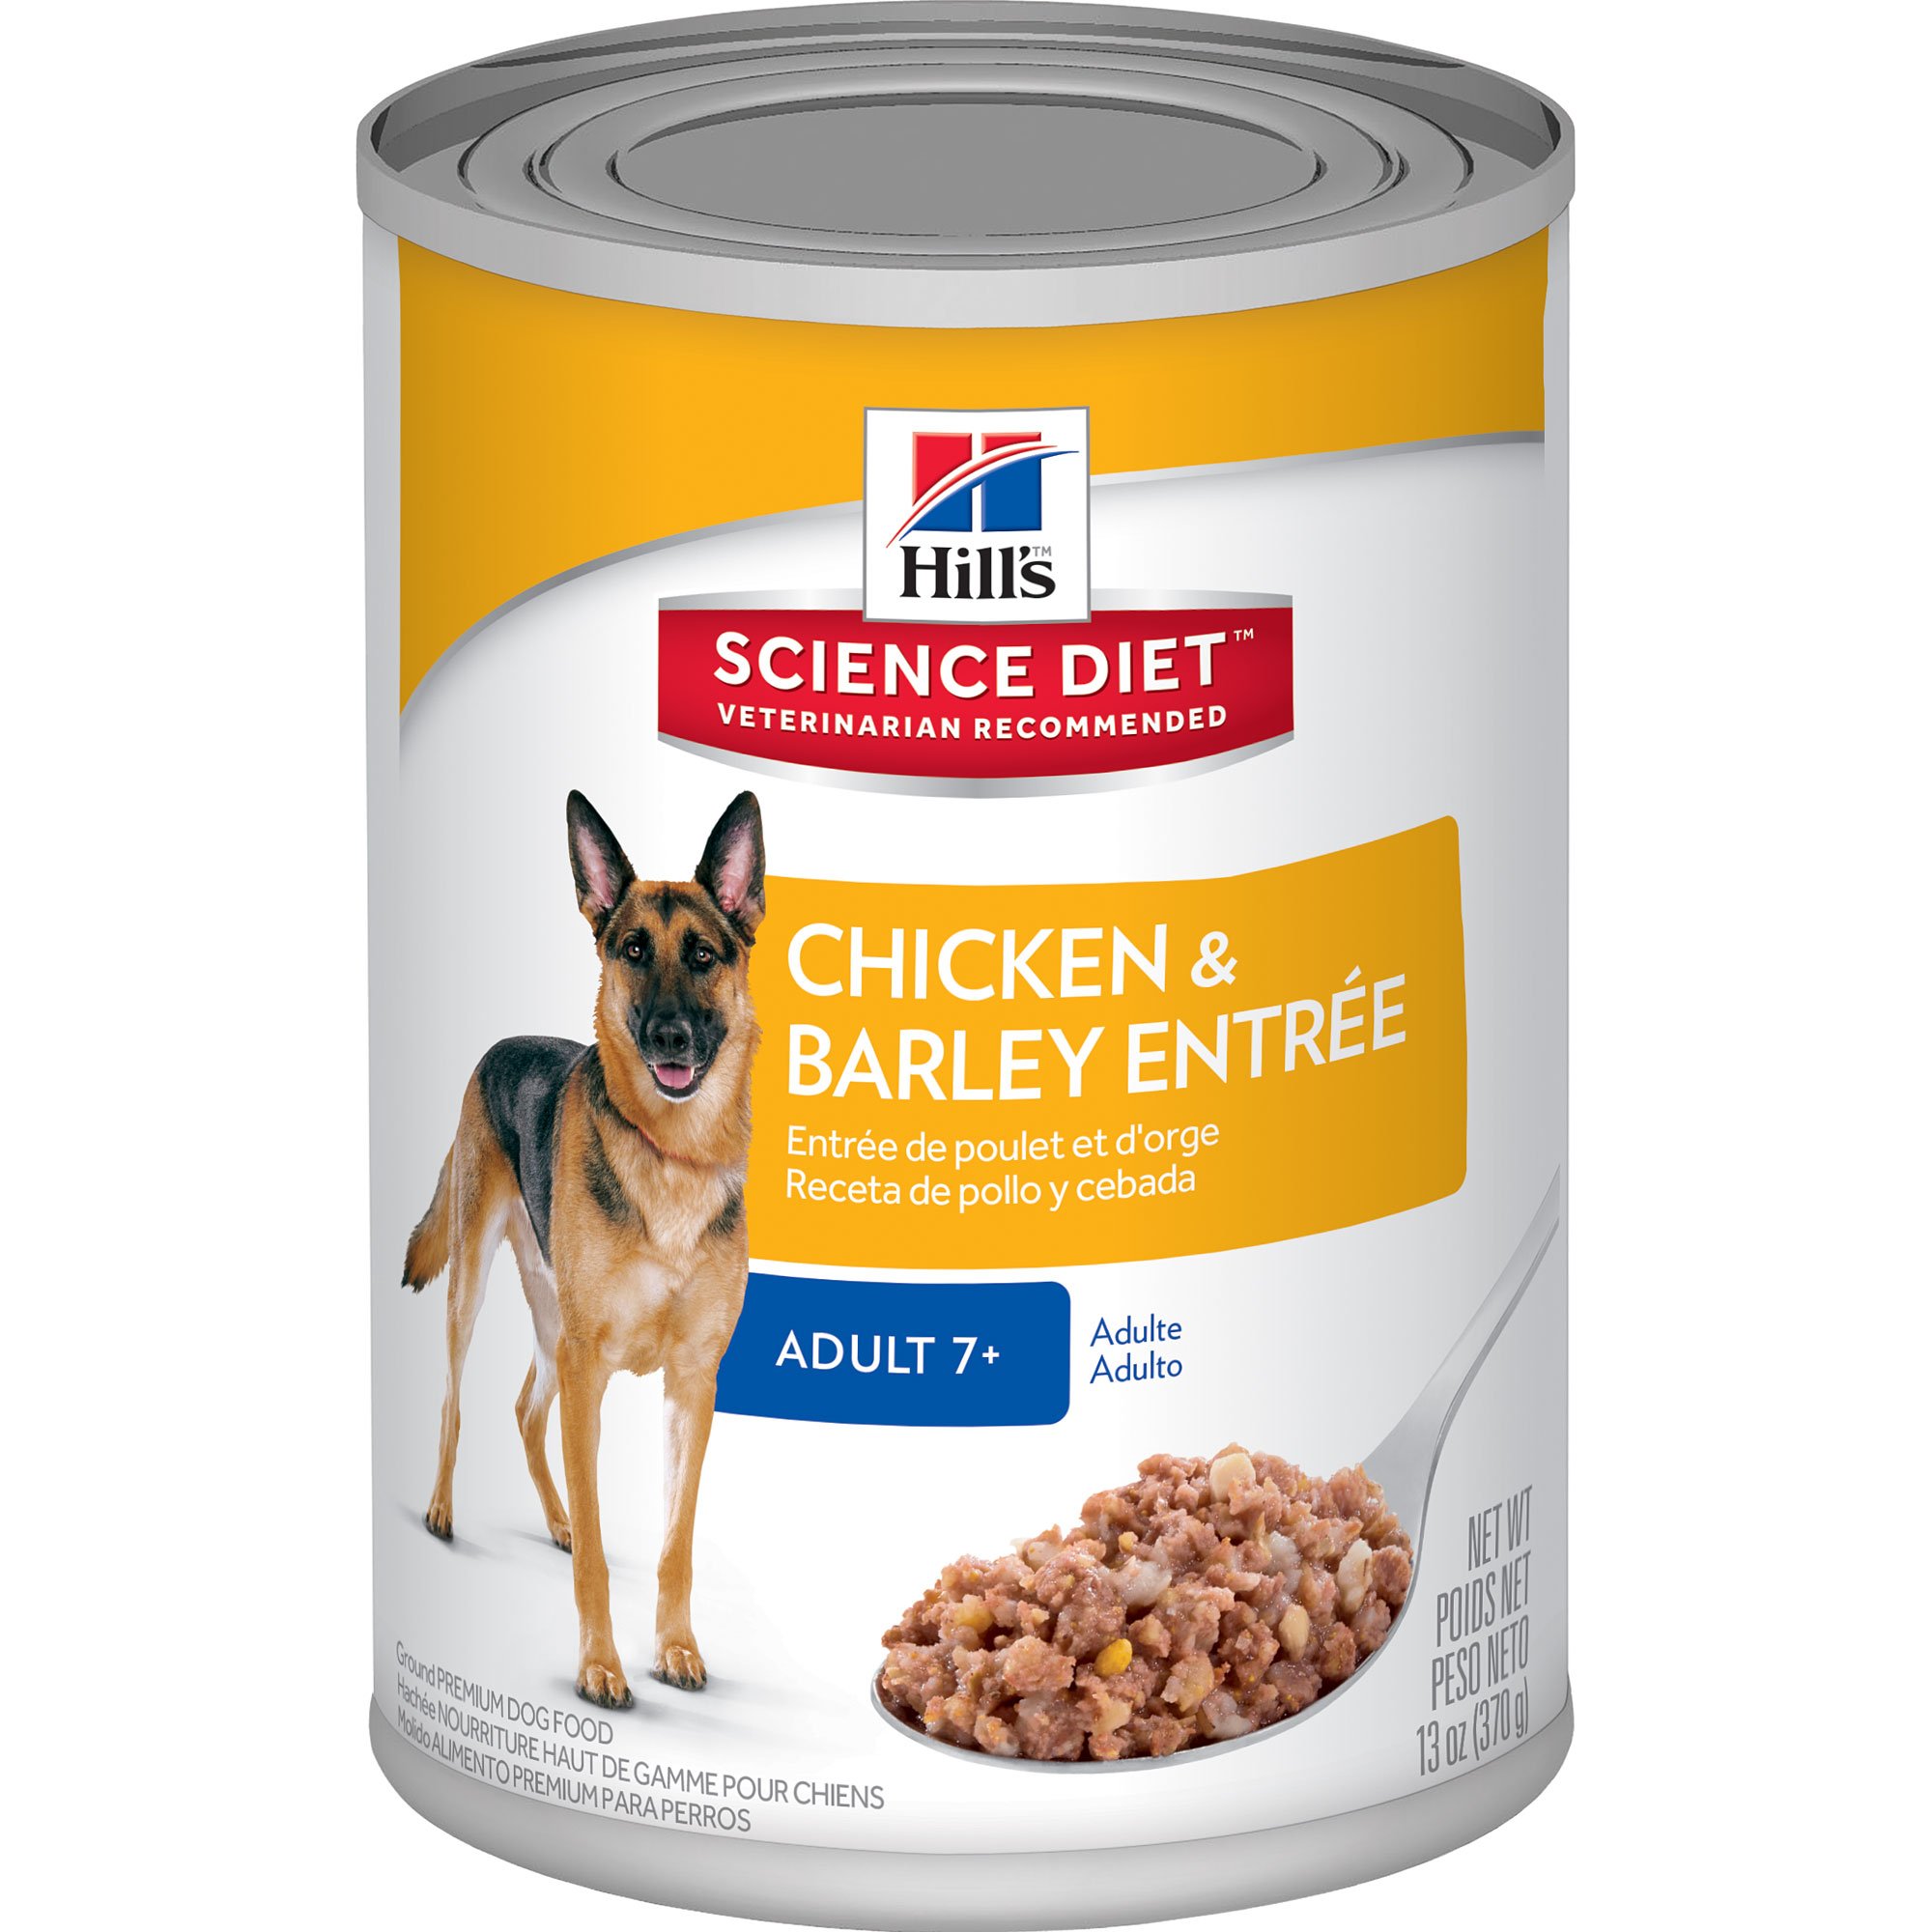 Dog Foods Good